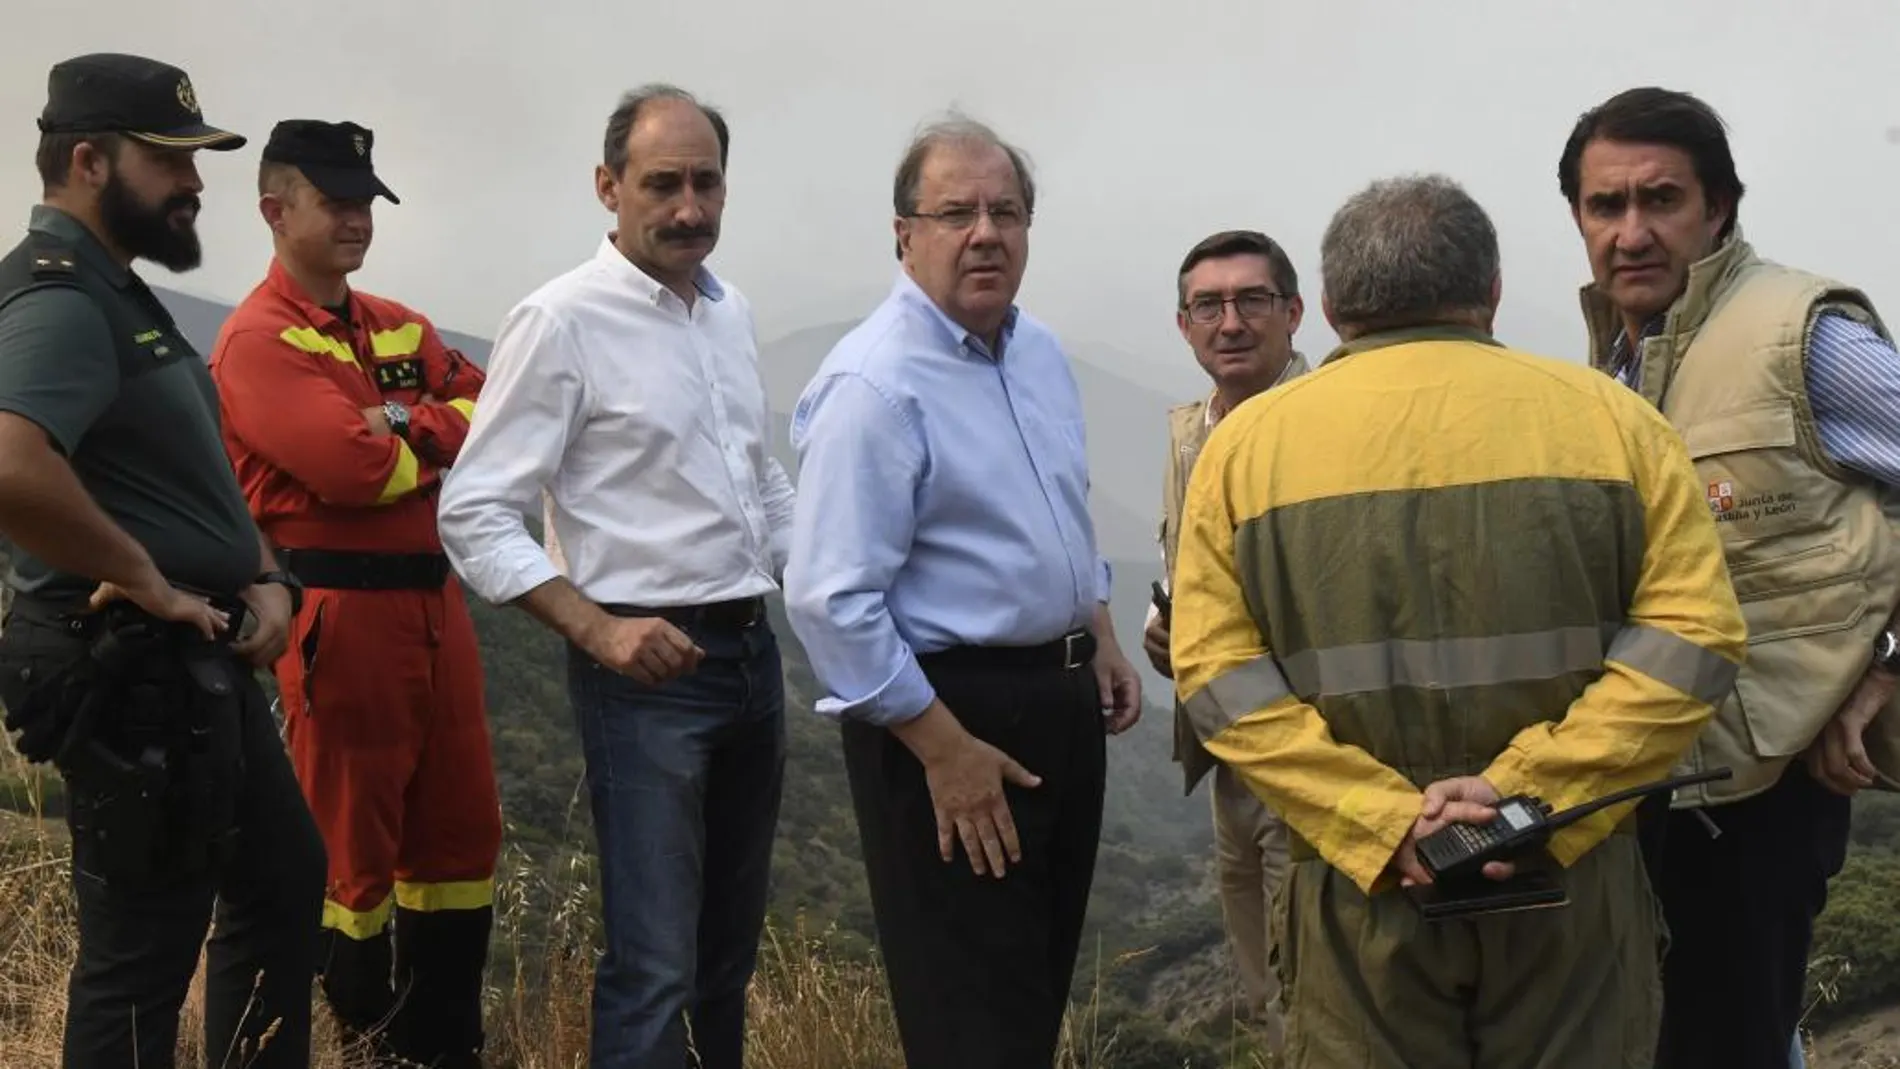 el presidente Juan Vicente Herrera, visita la zona afectada por el incendio, junto al consejero Suárez-Quiñones, entre otros